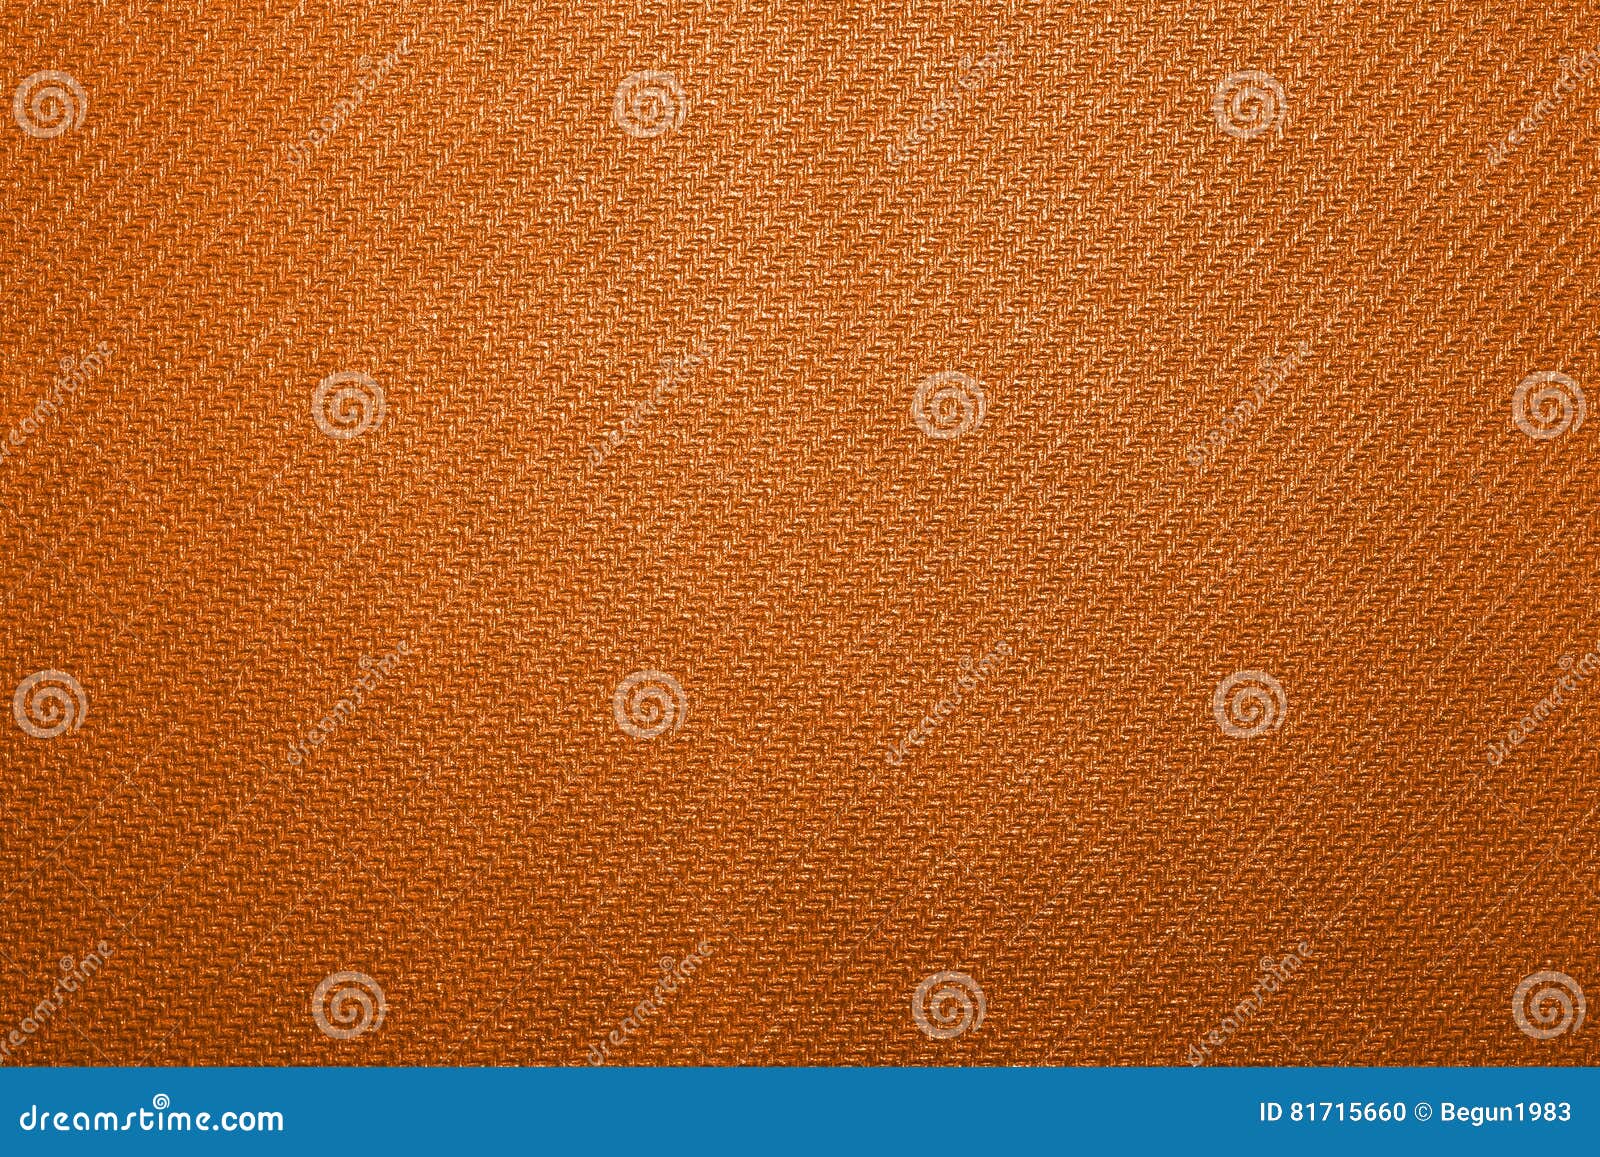 Orange Corrugated Rubber Texture Stock Photo - Image of foam, domestic ...